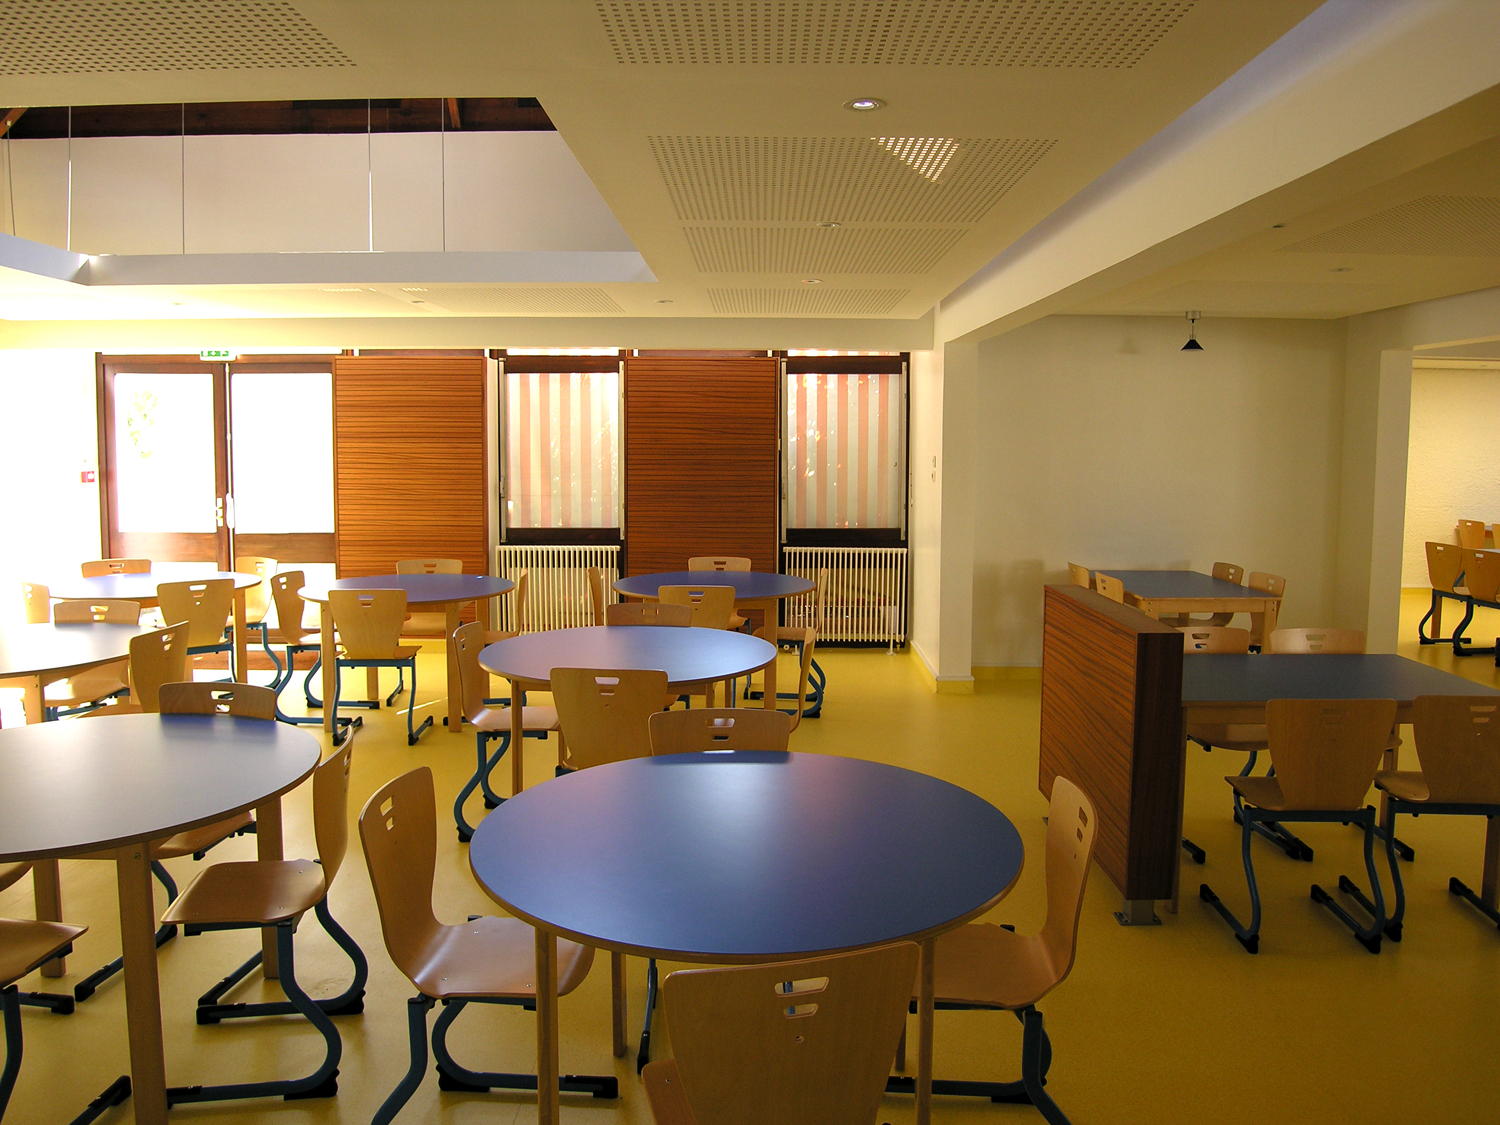 Atelier Prevost, architectes - Restaurant scolaire de l'école de Cassan